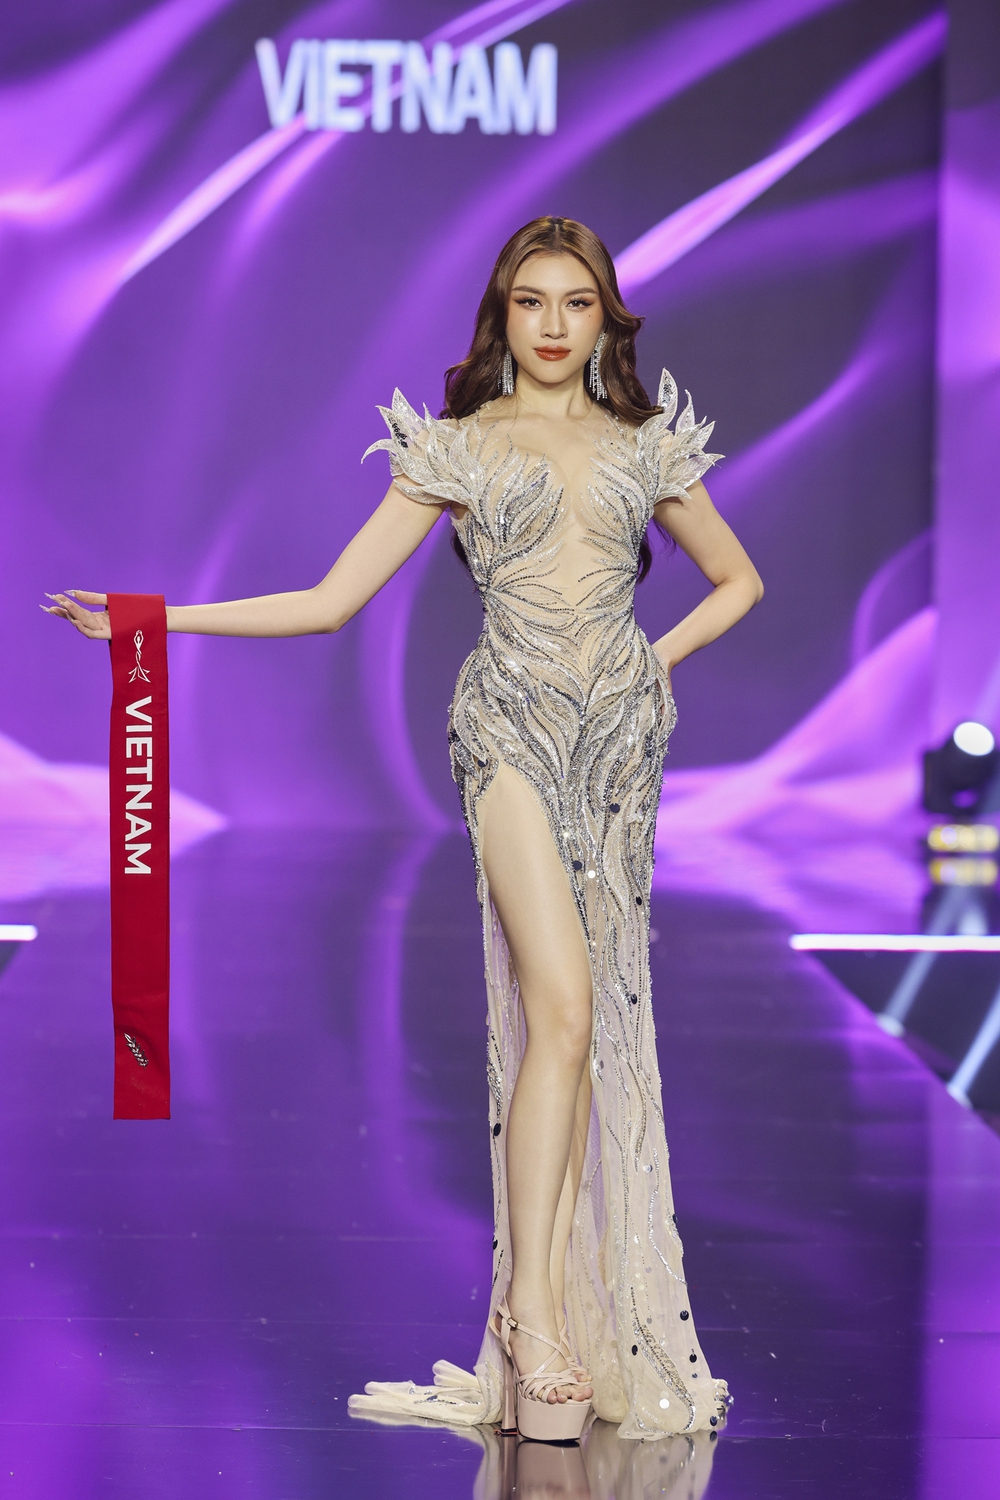 Bán kết Miss Charm 2023: Thí sinh trình diễn bốc lửa với bikini, Thanh Thanh Huyền được nhận xét là chưa nổi bật - Ảnh 13.